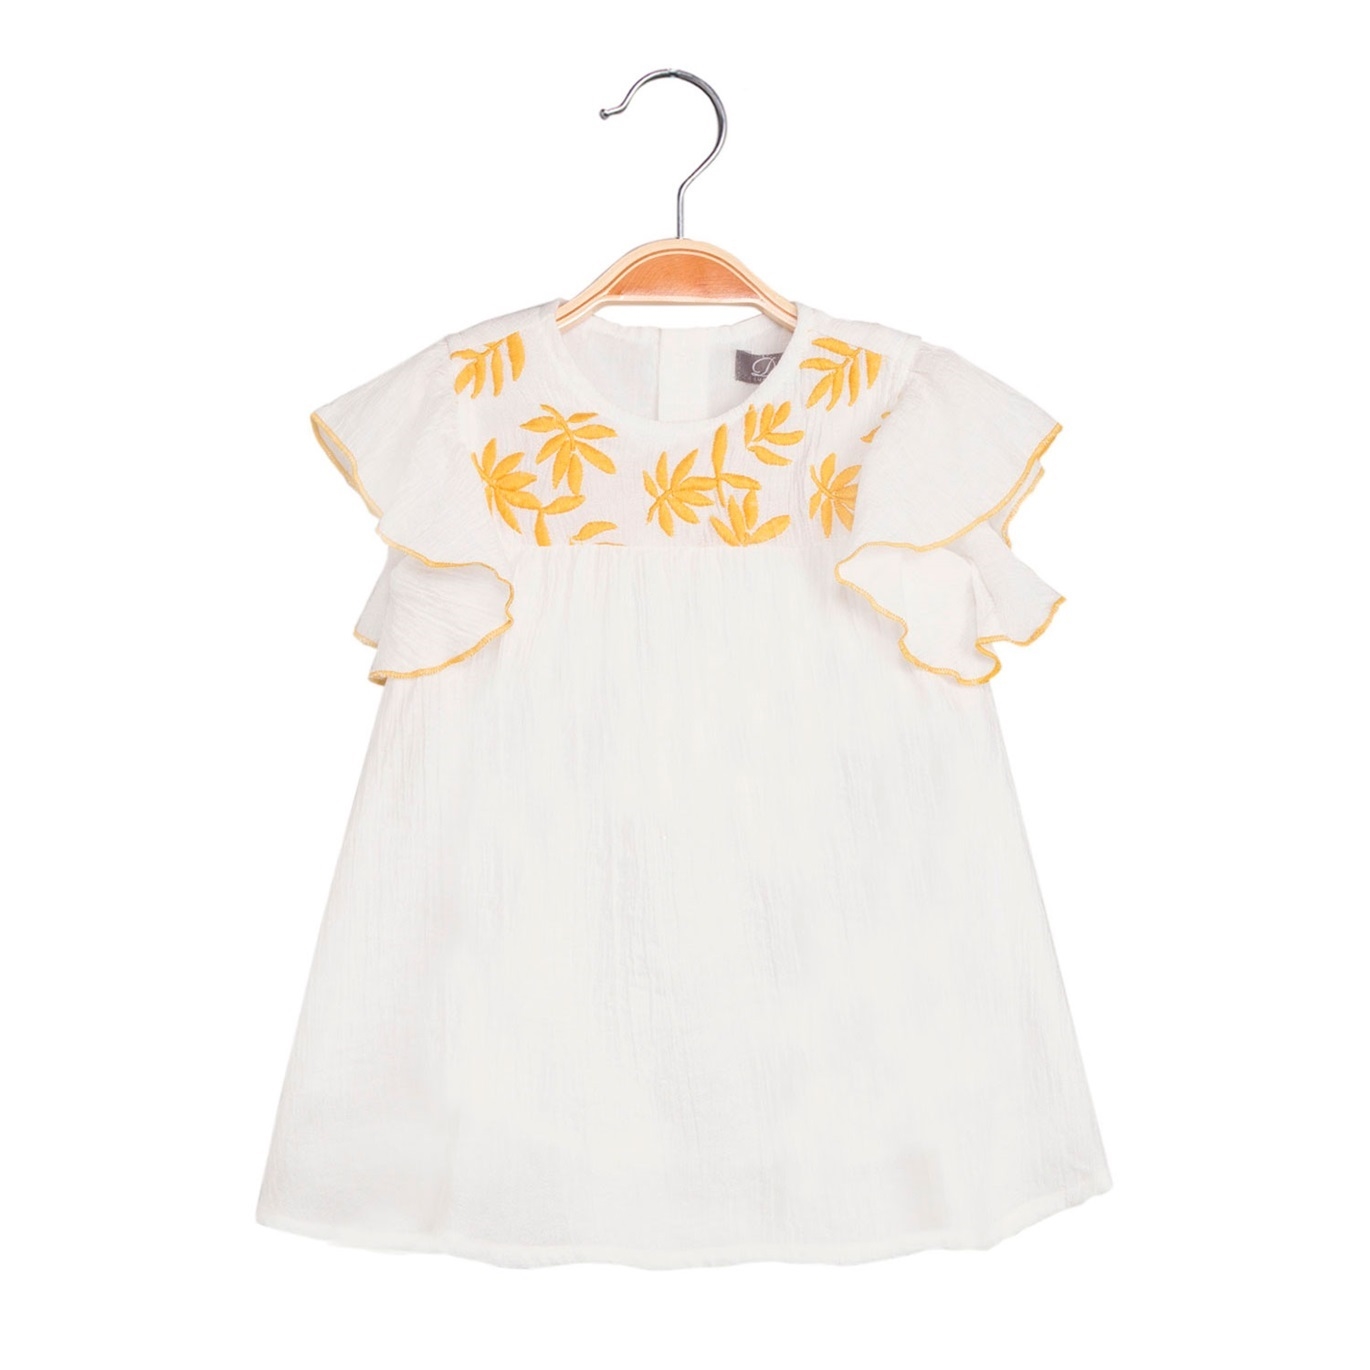 Imagen de Vestido de bebé niña en blanco con bordado